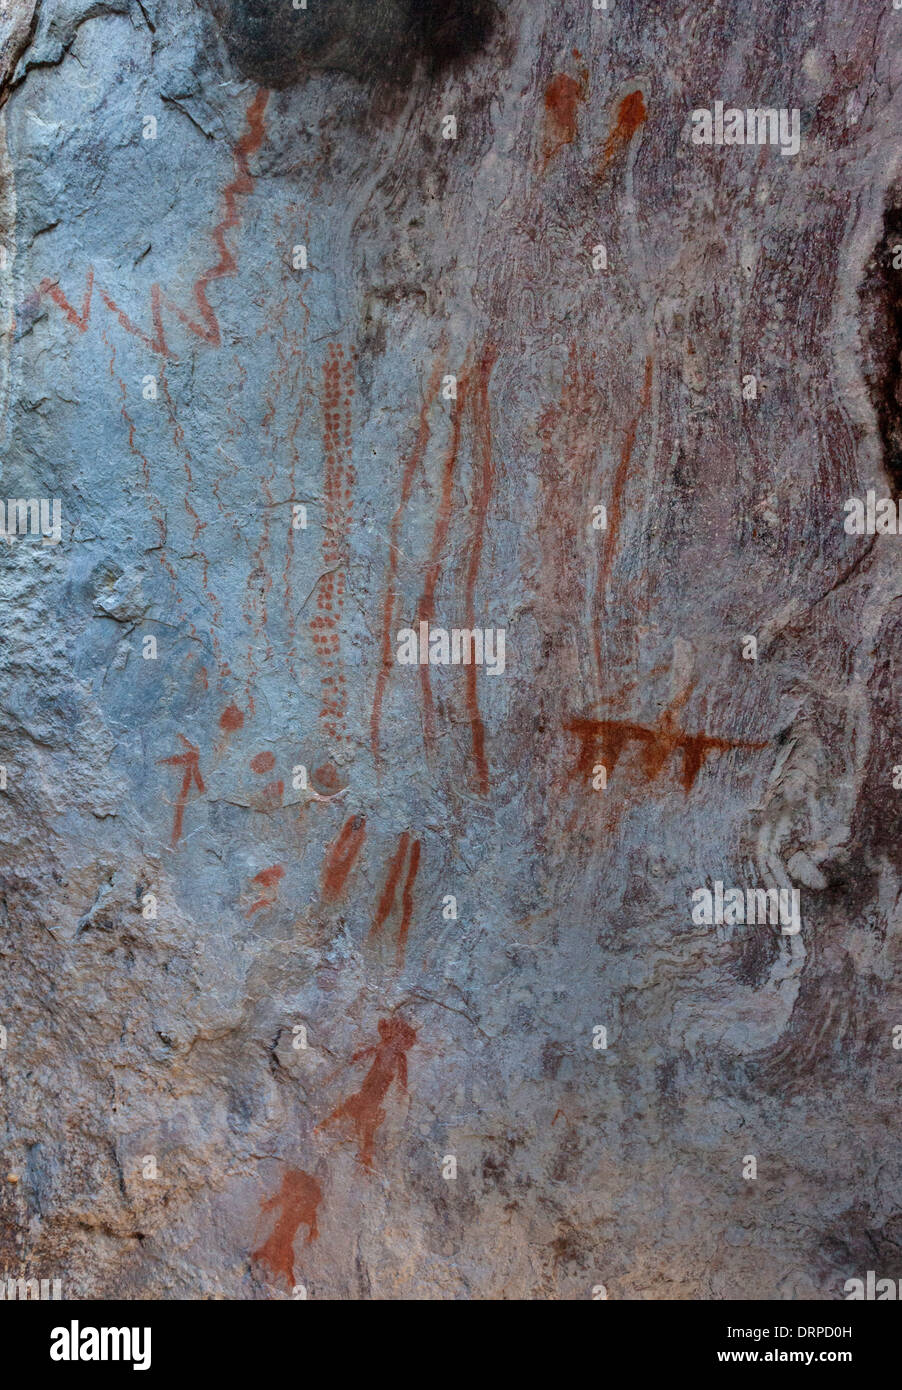 Indiano antico red pittogrammi trovati nel portale in Arizona. Foto Stock